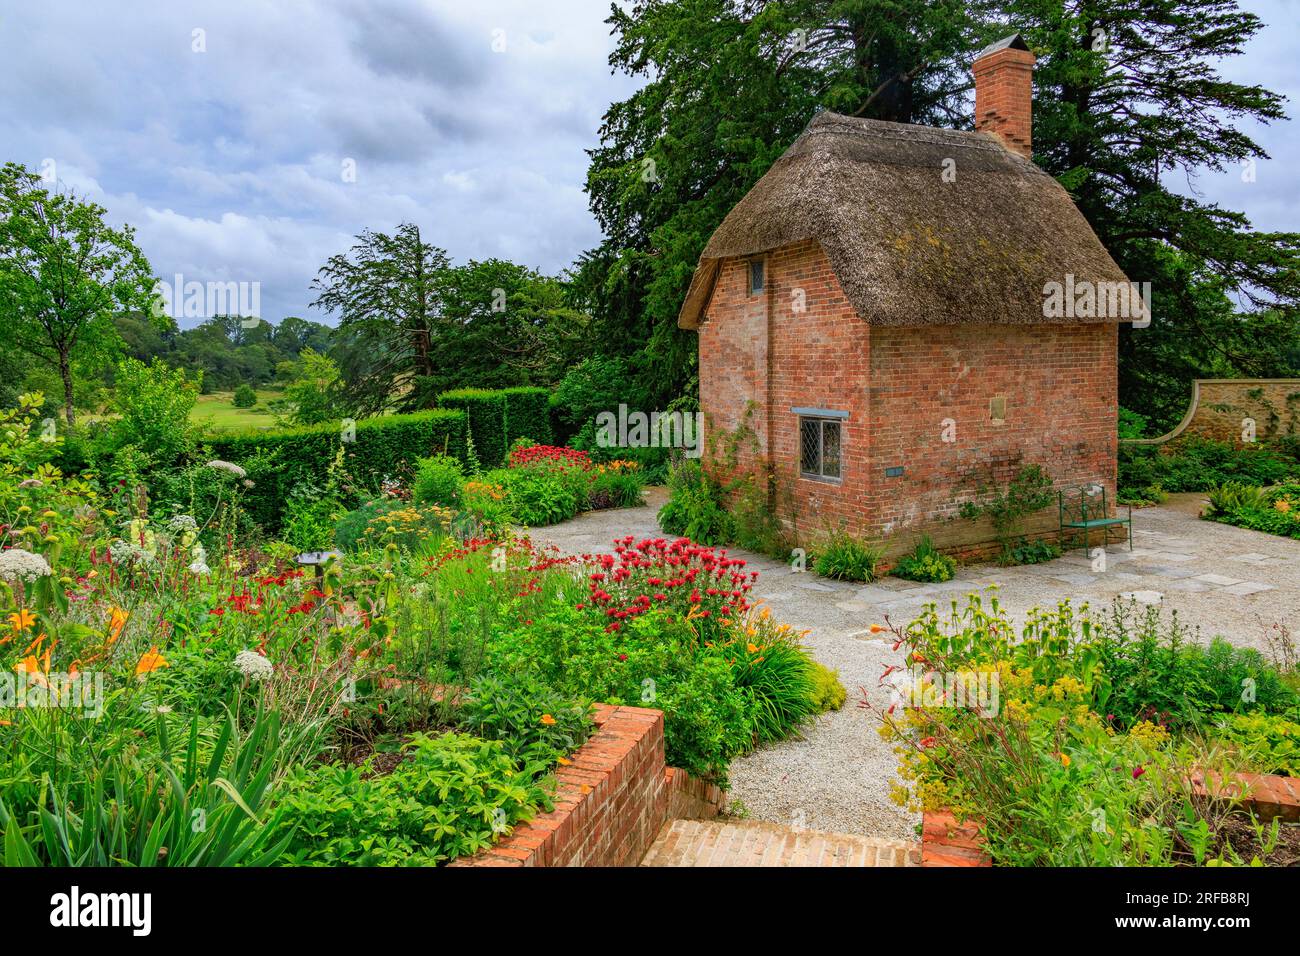 Un petit cottage en briques rouges avec toit de chaume entouré de bordures colorées dans le Cottage Garden à 'The Newt in Somersets', nr Bruton, Angleterre, Royaume-Uni Banque D'Images